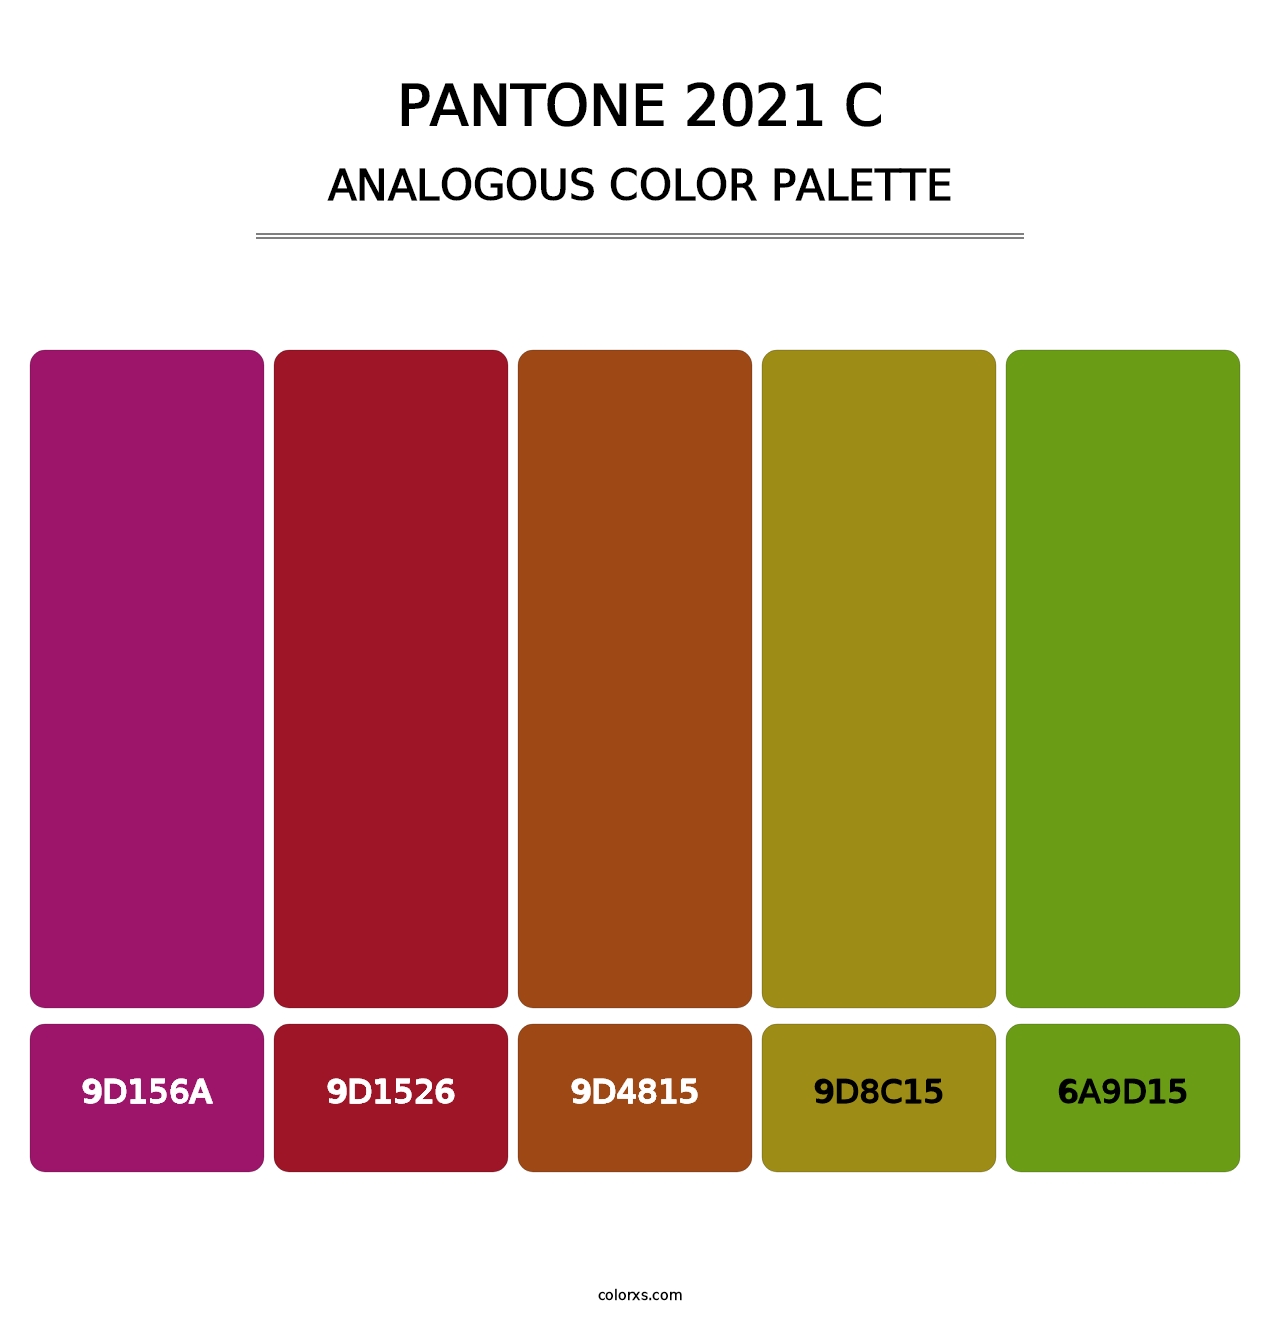 PANTONE 2021 C - Analogous Color Palette